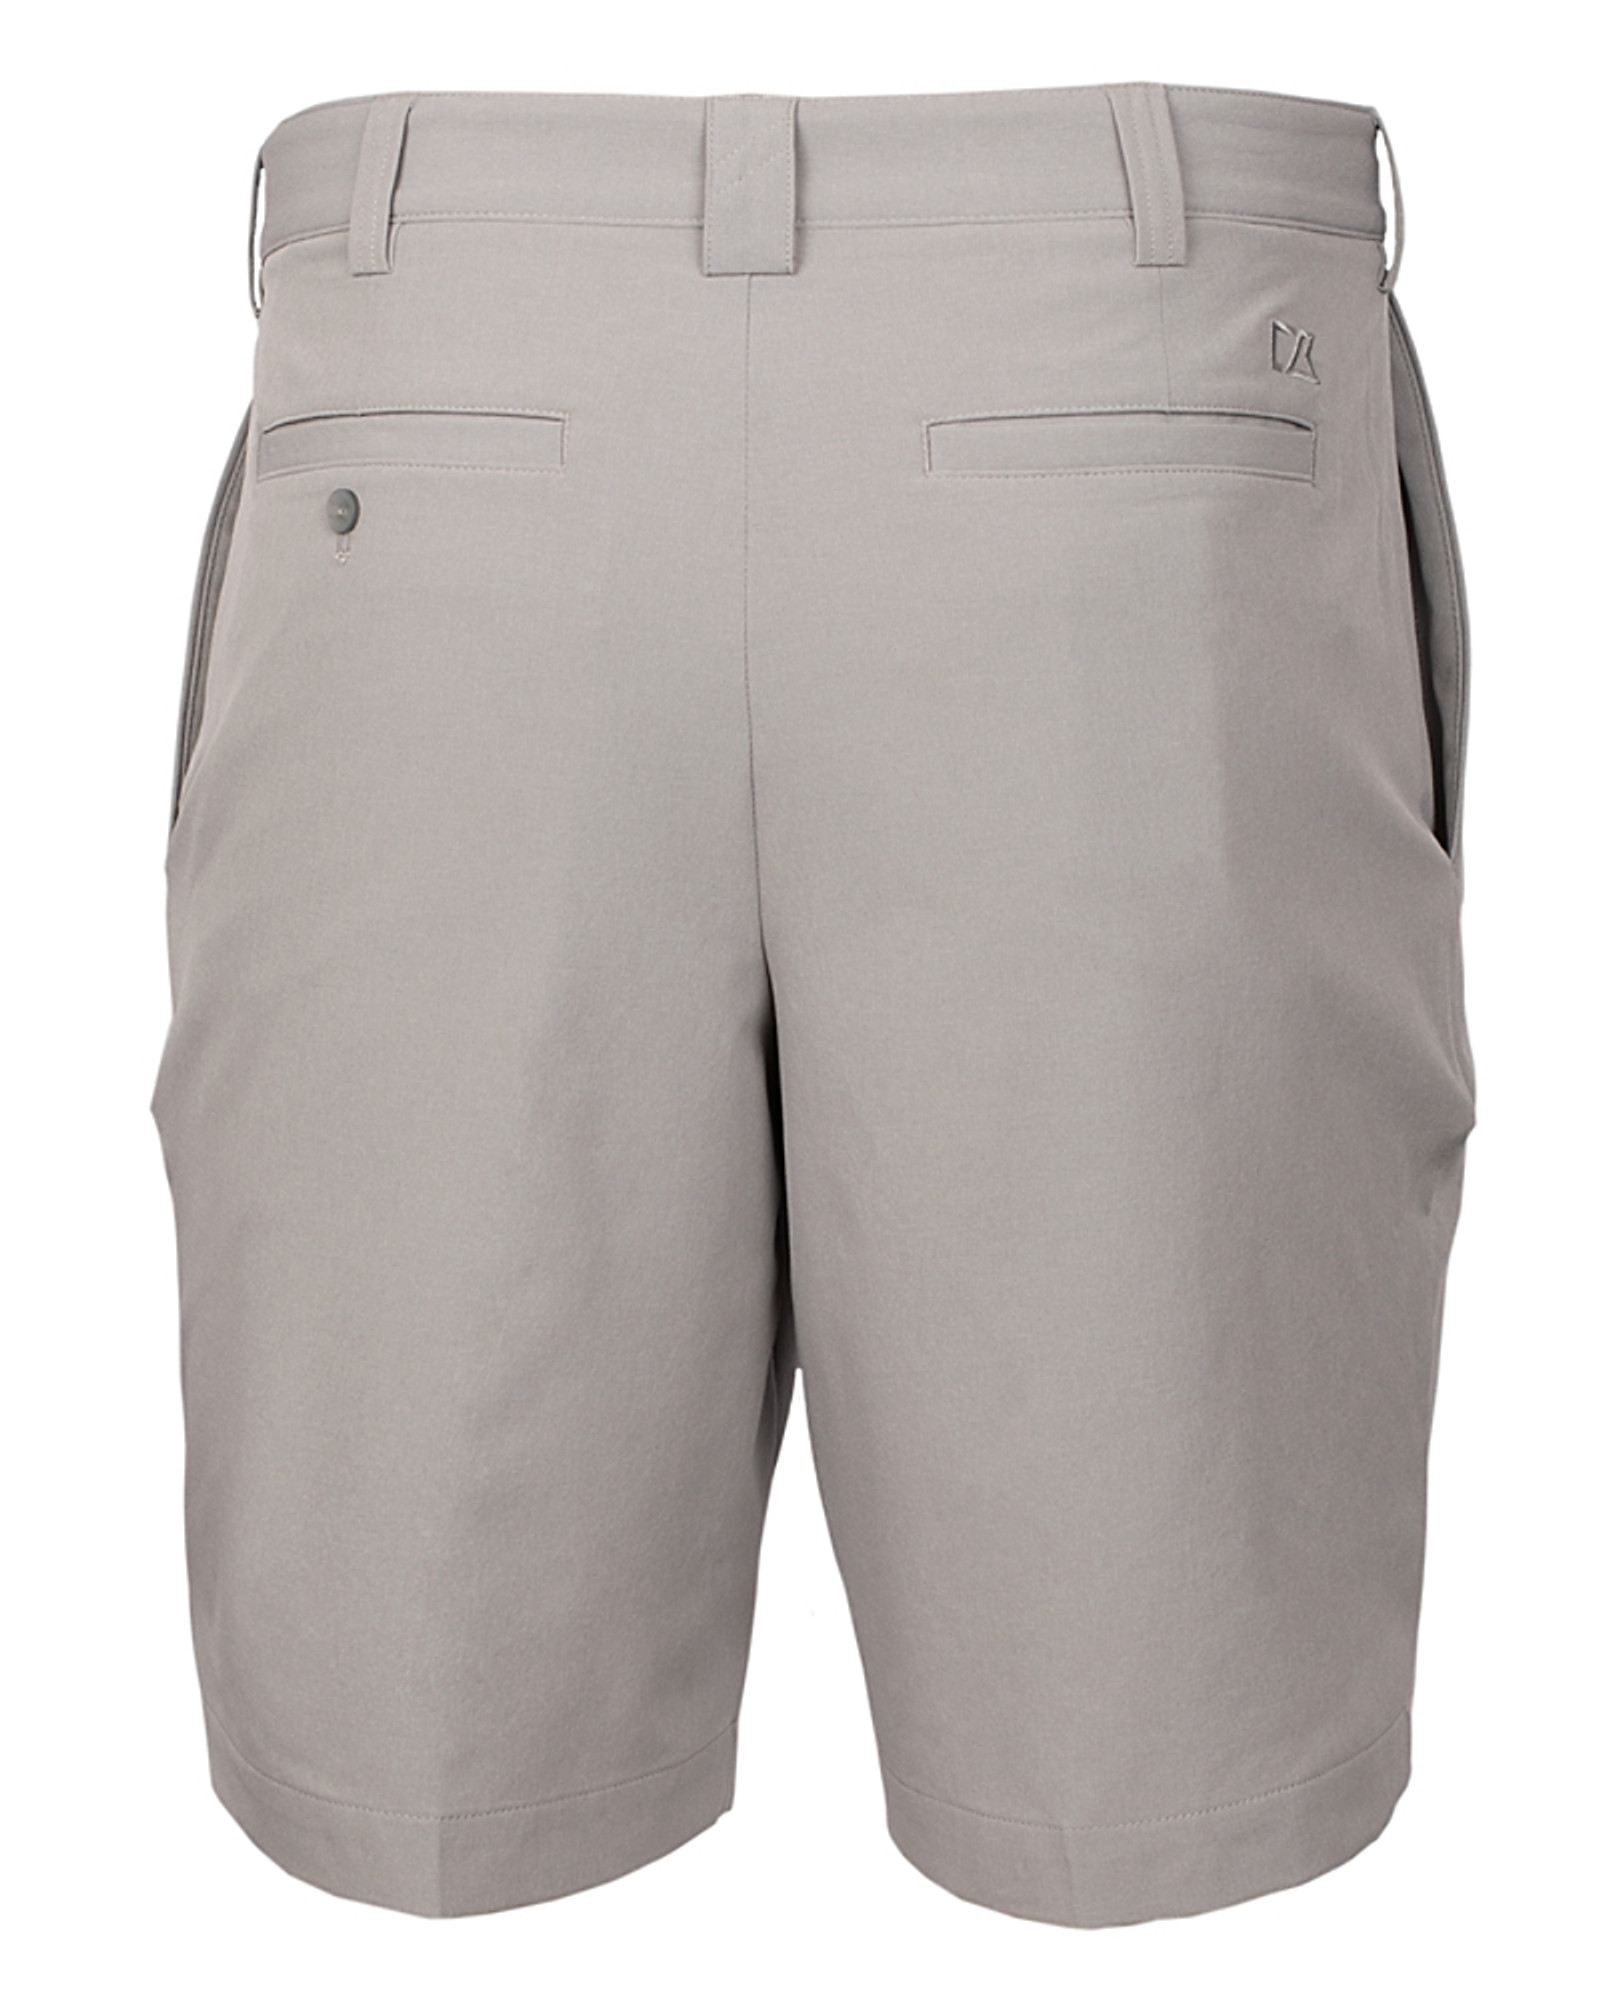 Men's Golf Shorts - Big & Tall Bainbridge Flat Front Style | Cutter & Buck